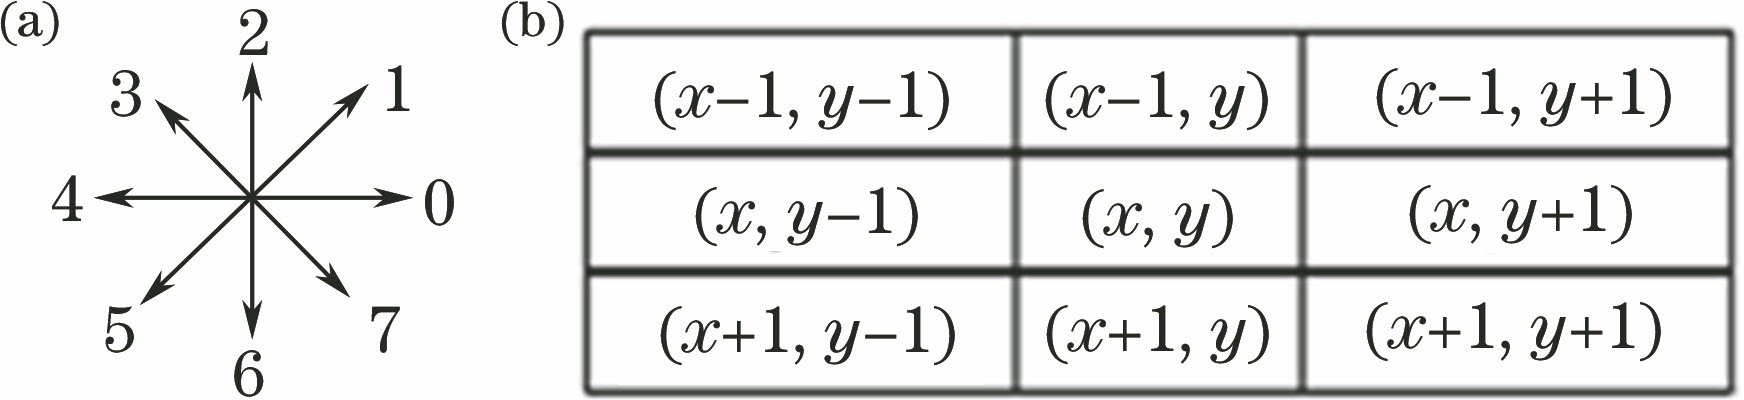 (a) Chain code representation; (b) coordinate representation